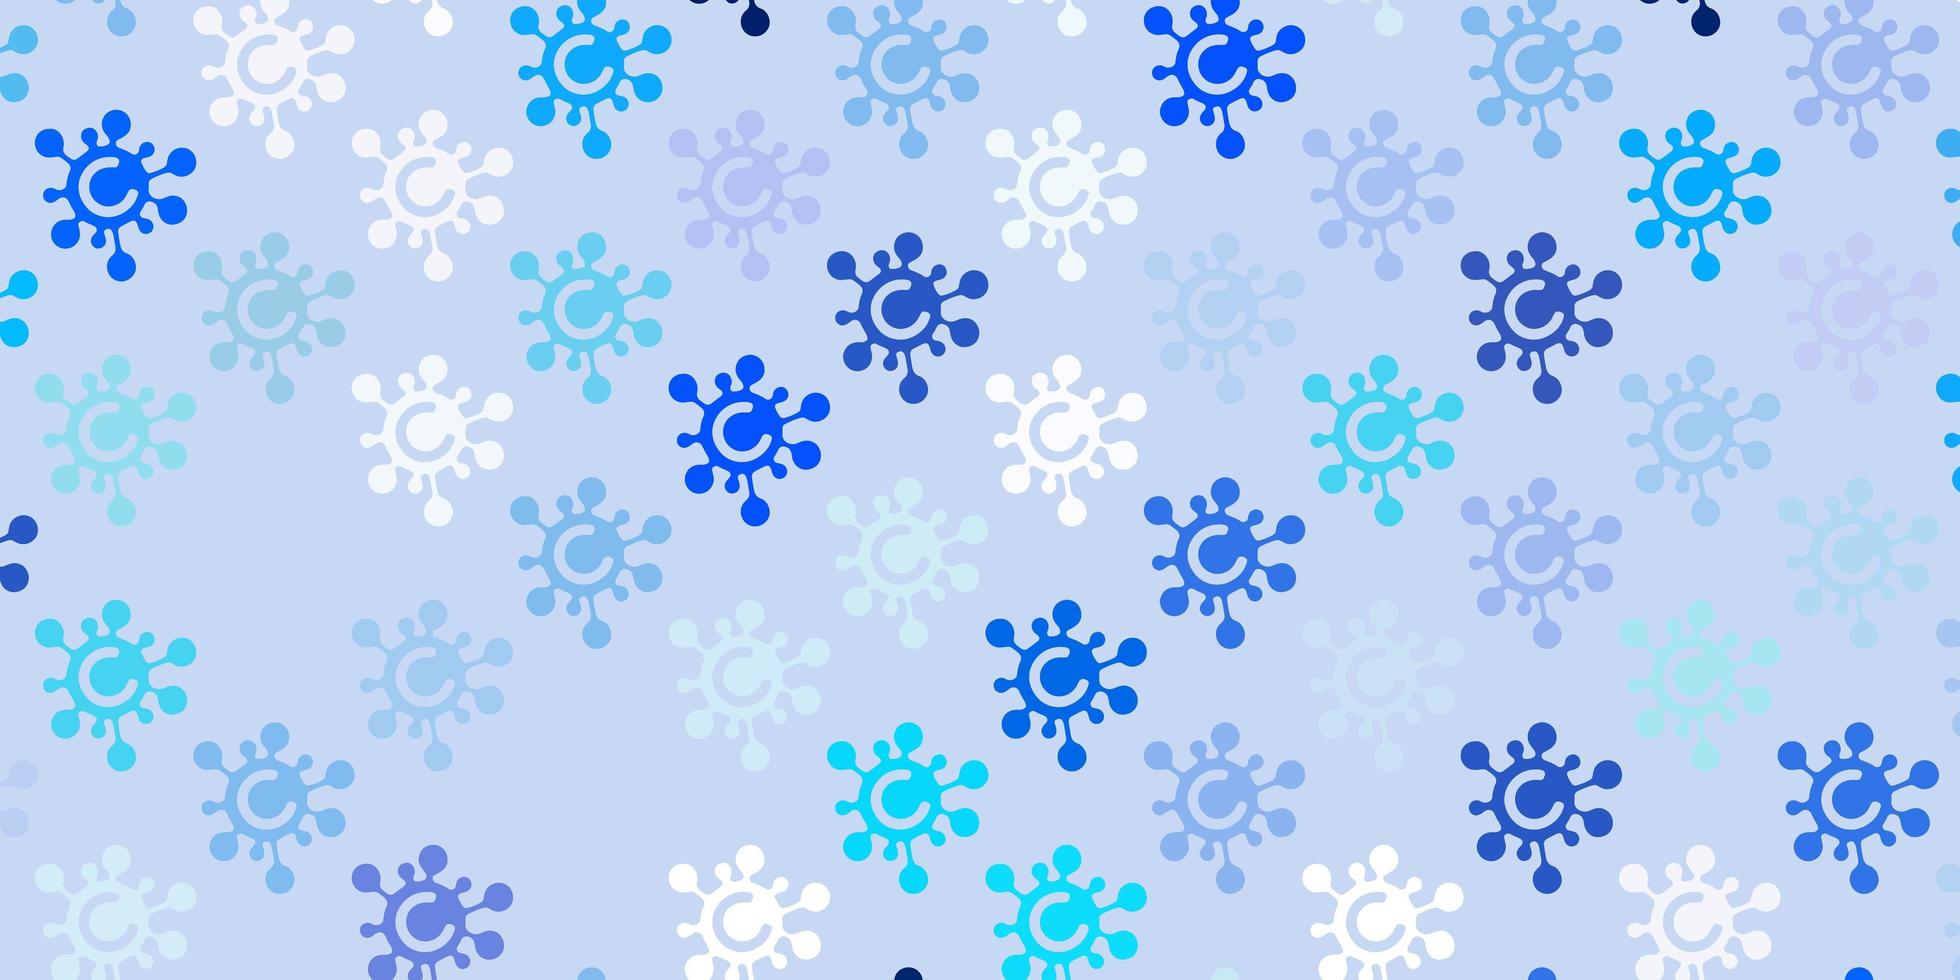 sfondo vettoriale azzurro con simboli covid-19.